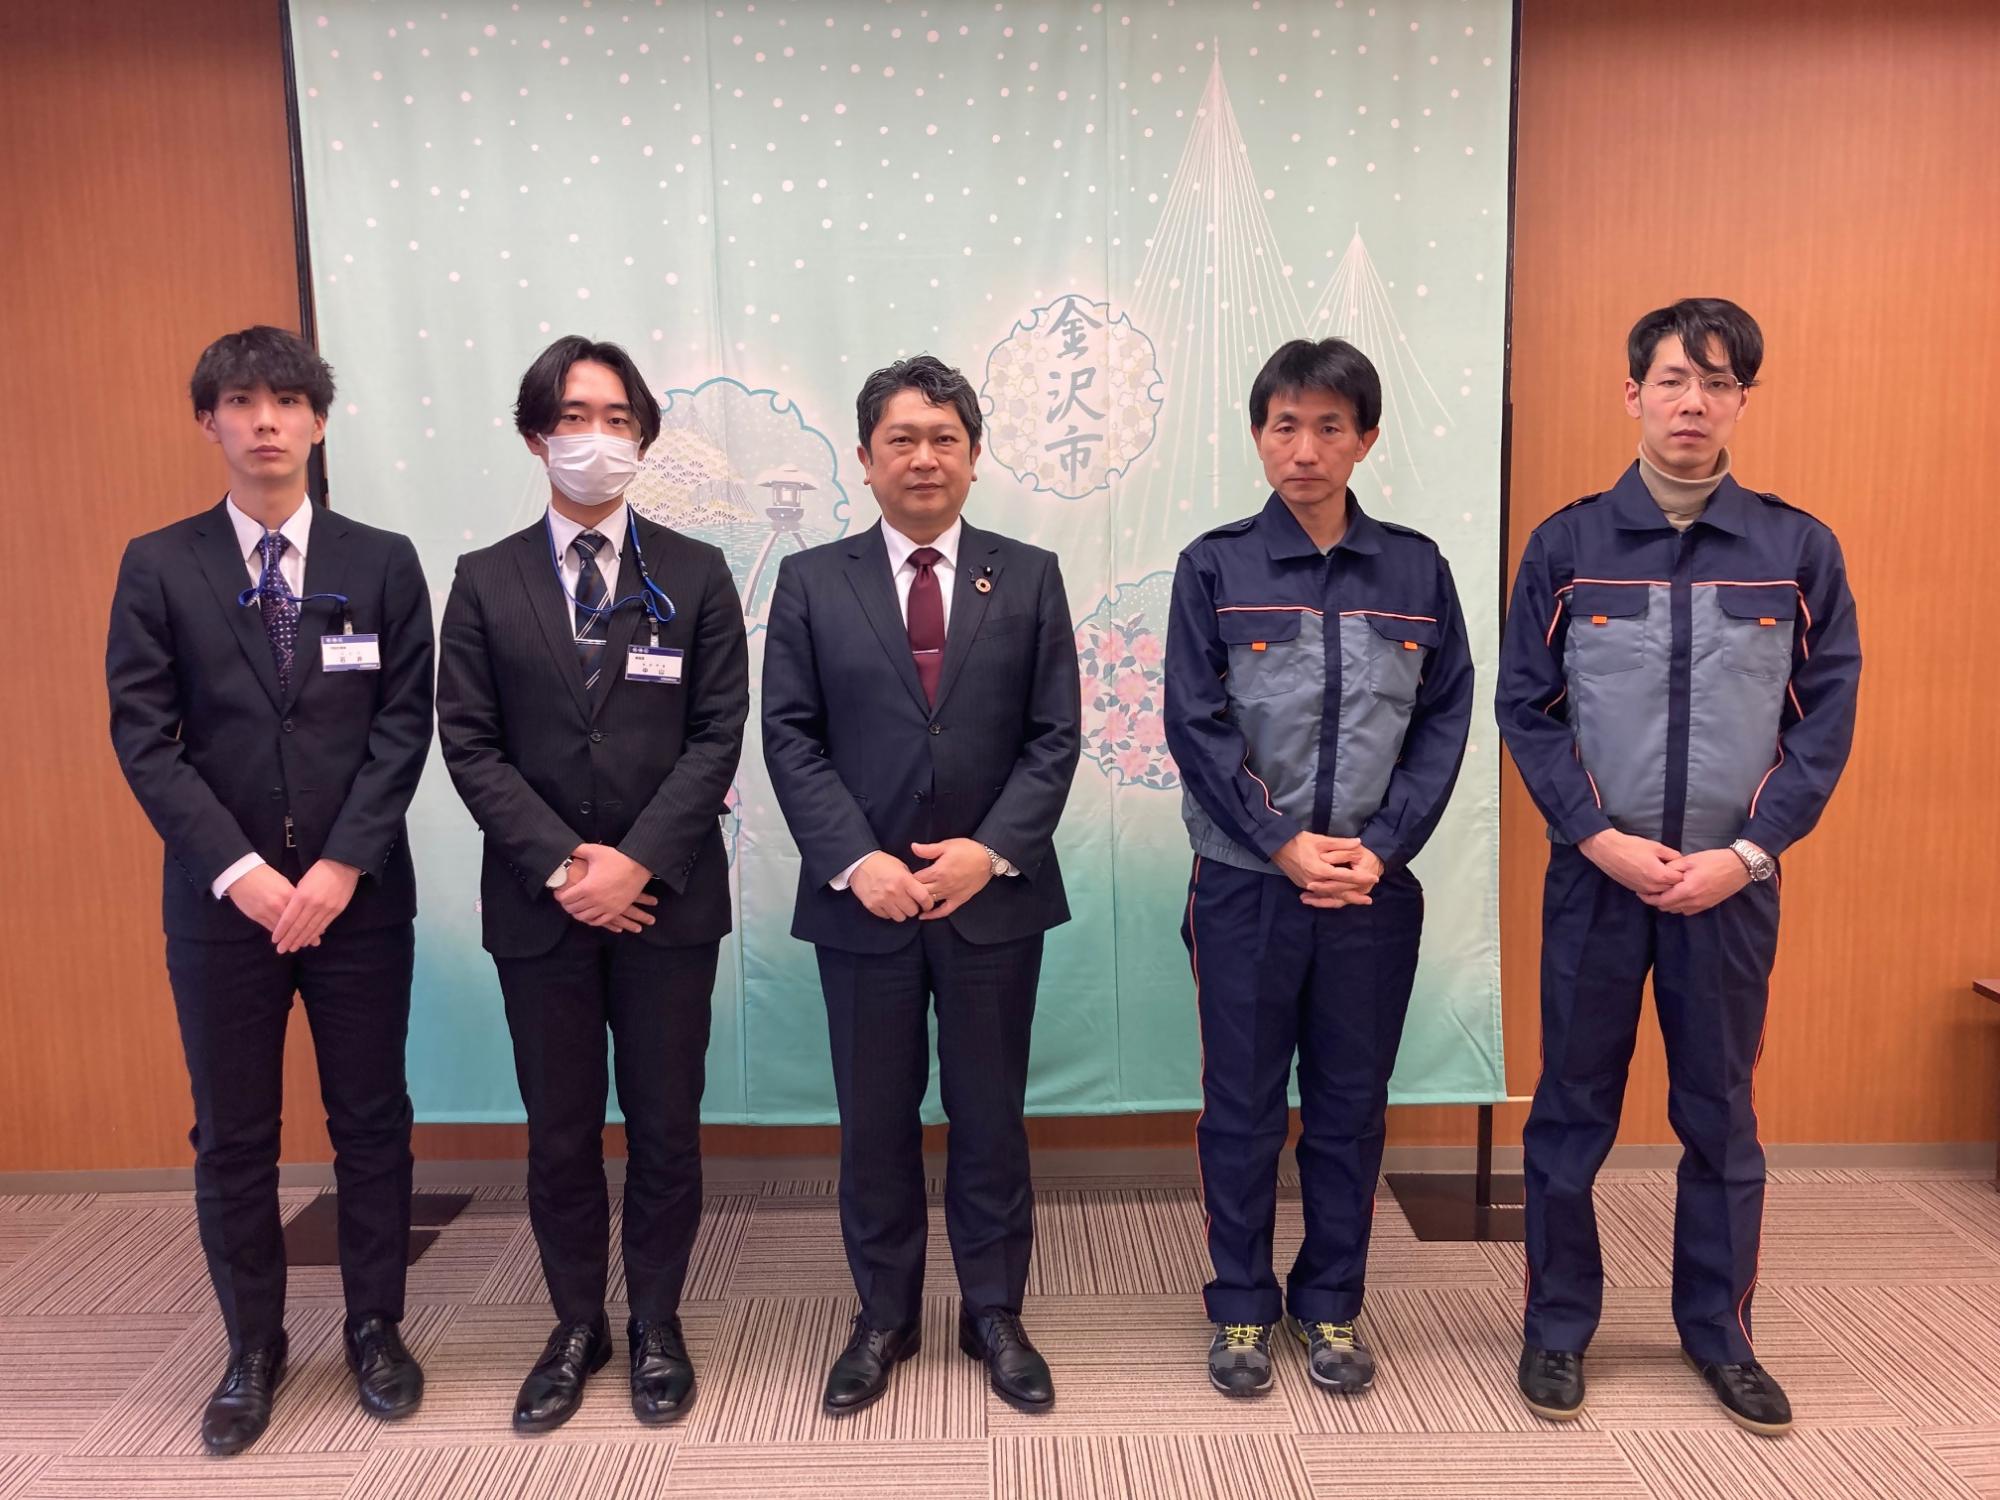 東京都板橋区と文京区からの派遣職員と市長の様子